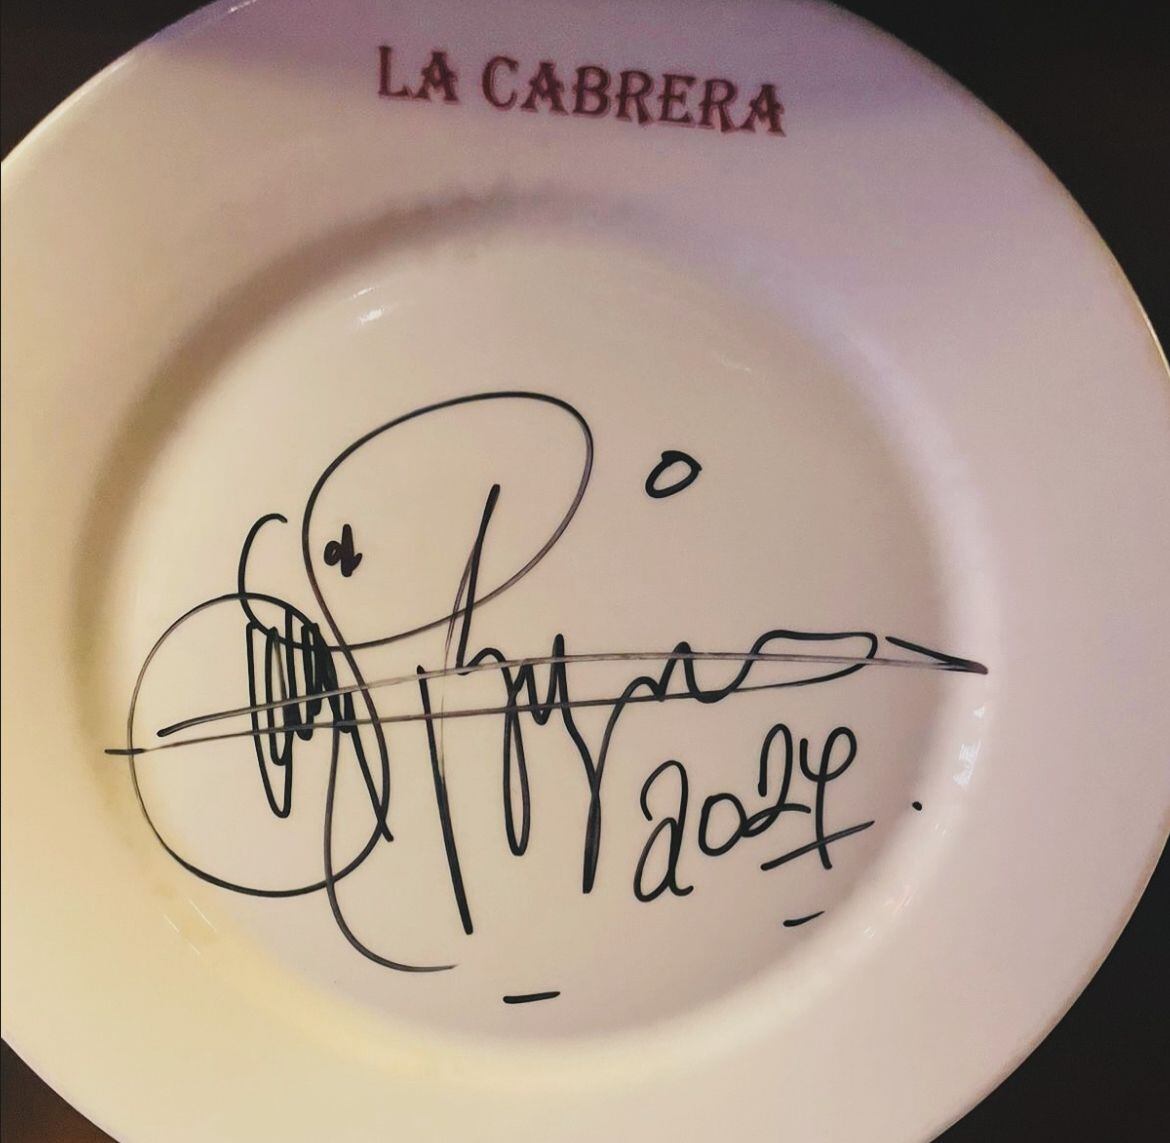 Luis Miguel firmó uno de los platos del restaurante en Colombia al que asistió. (Foto: Instagram / @lacabrera_bogota)